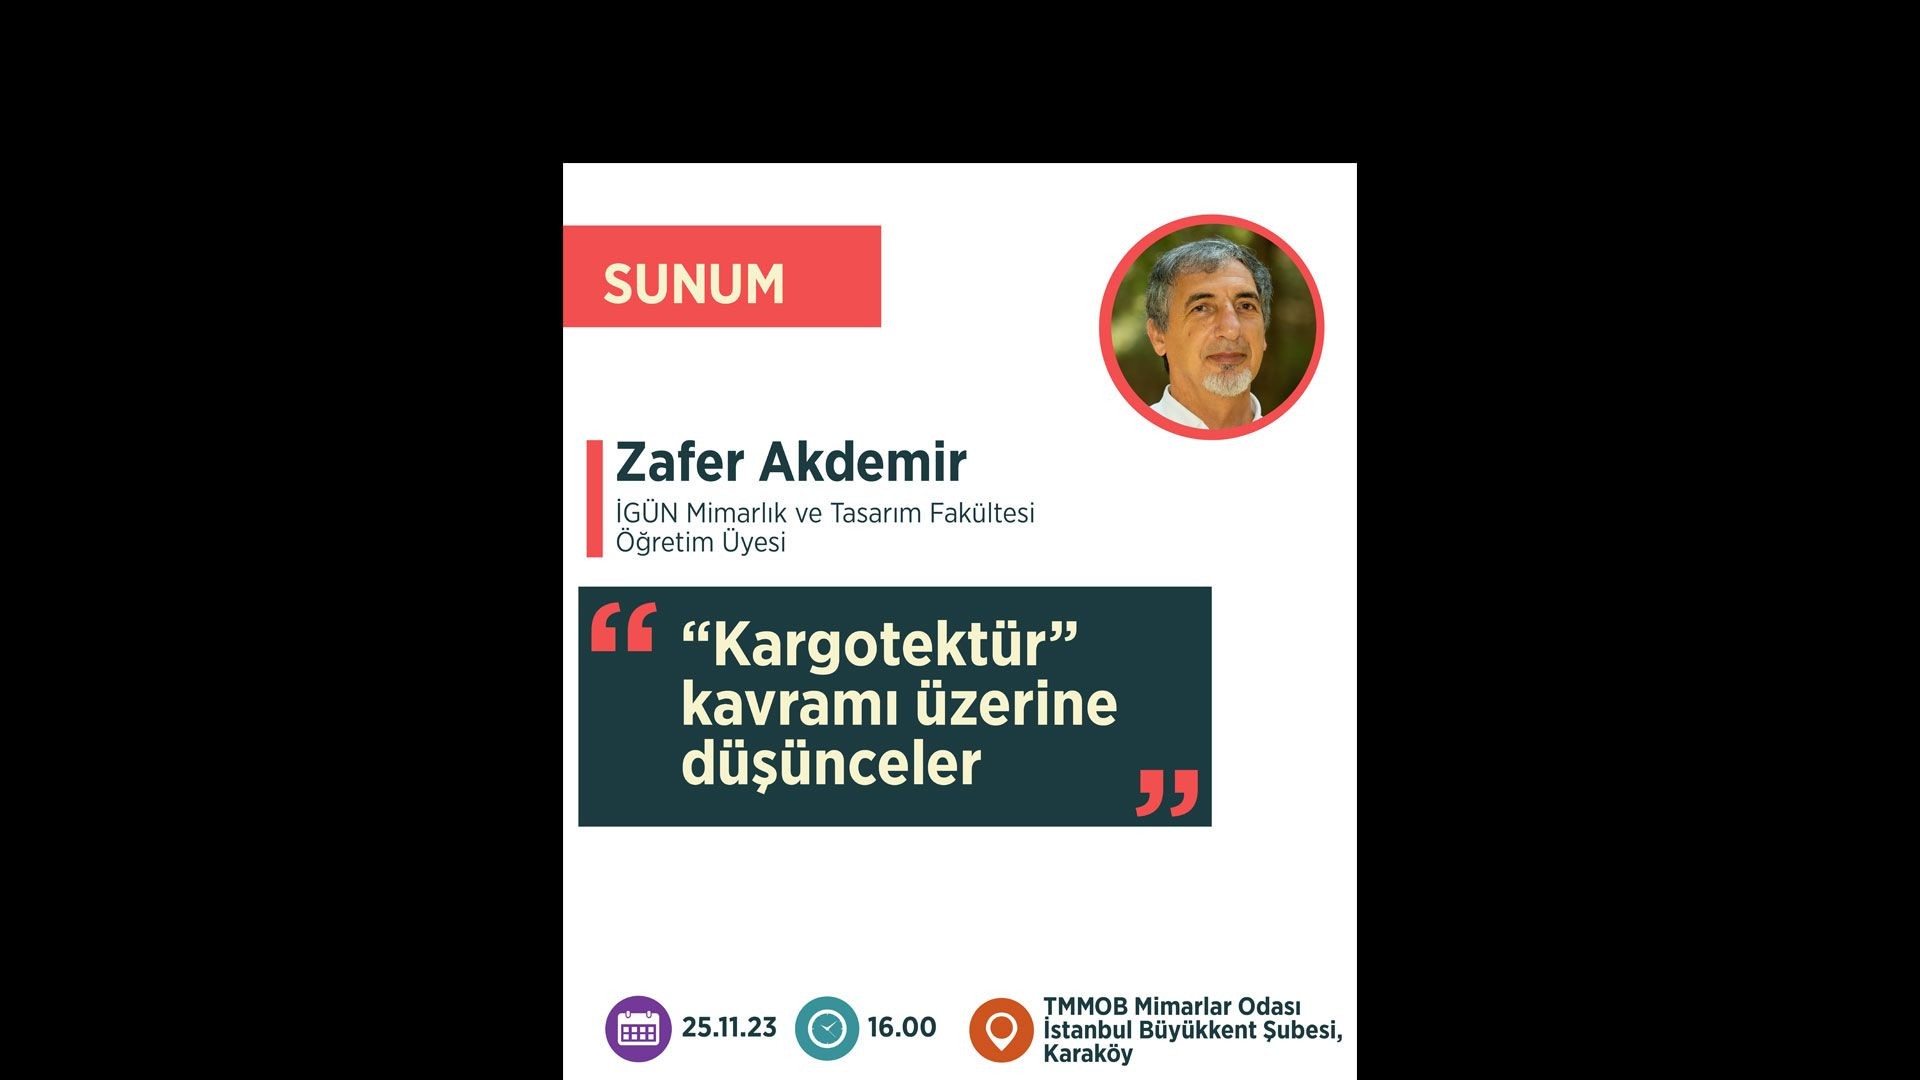 “Kargotektür kavramı üzerine düşünceler” - Prof. Dr. M. Zafer Akdemir